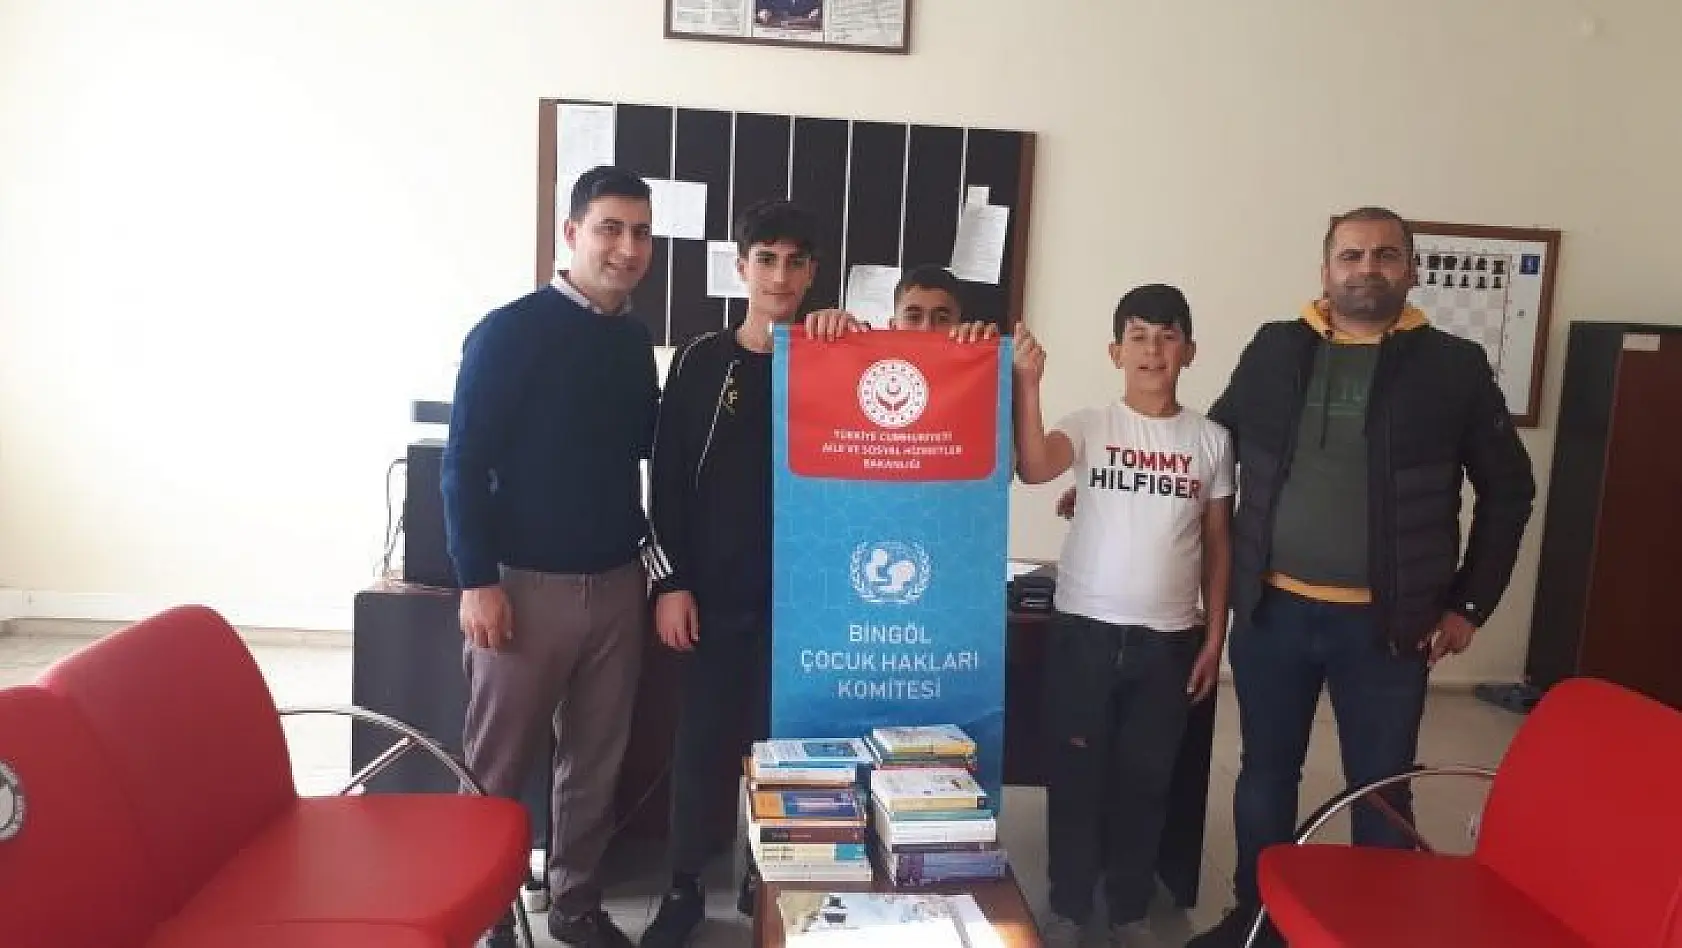 Bingöl'de köy okuluna kitap bağışı yapıldı